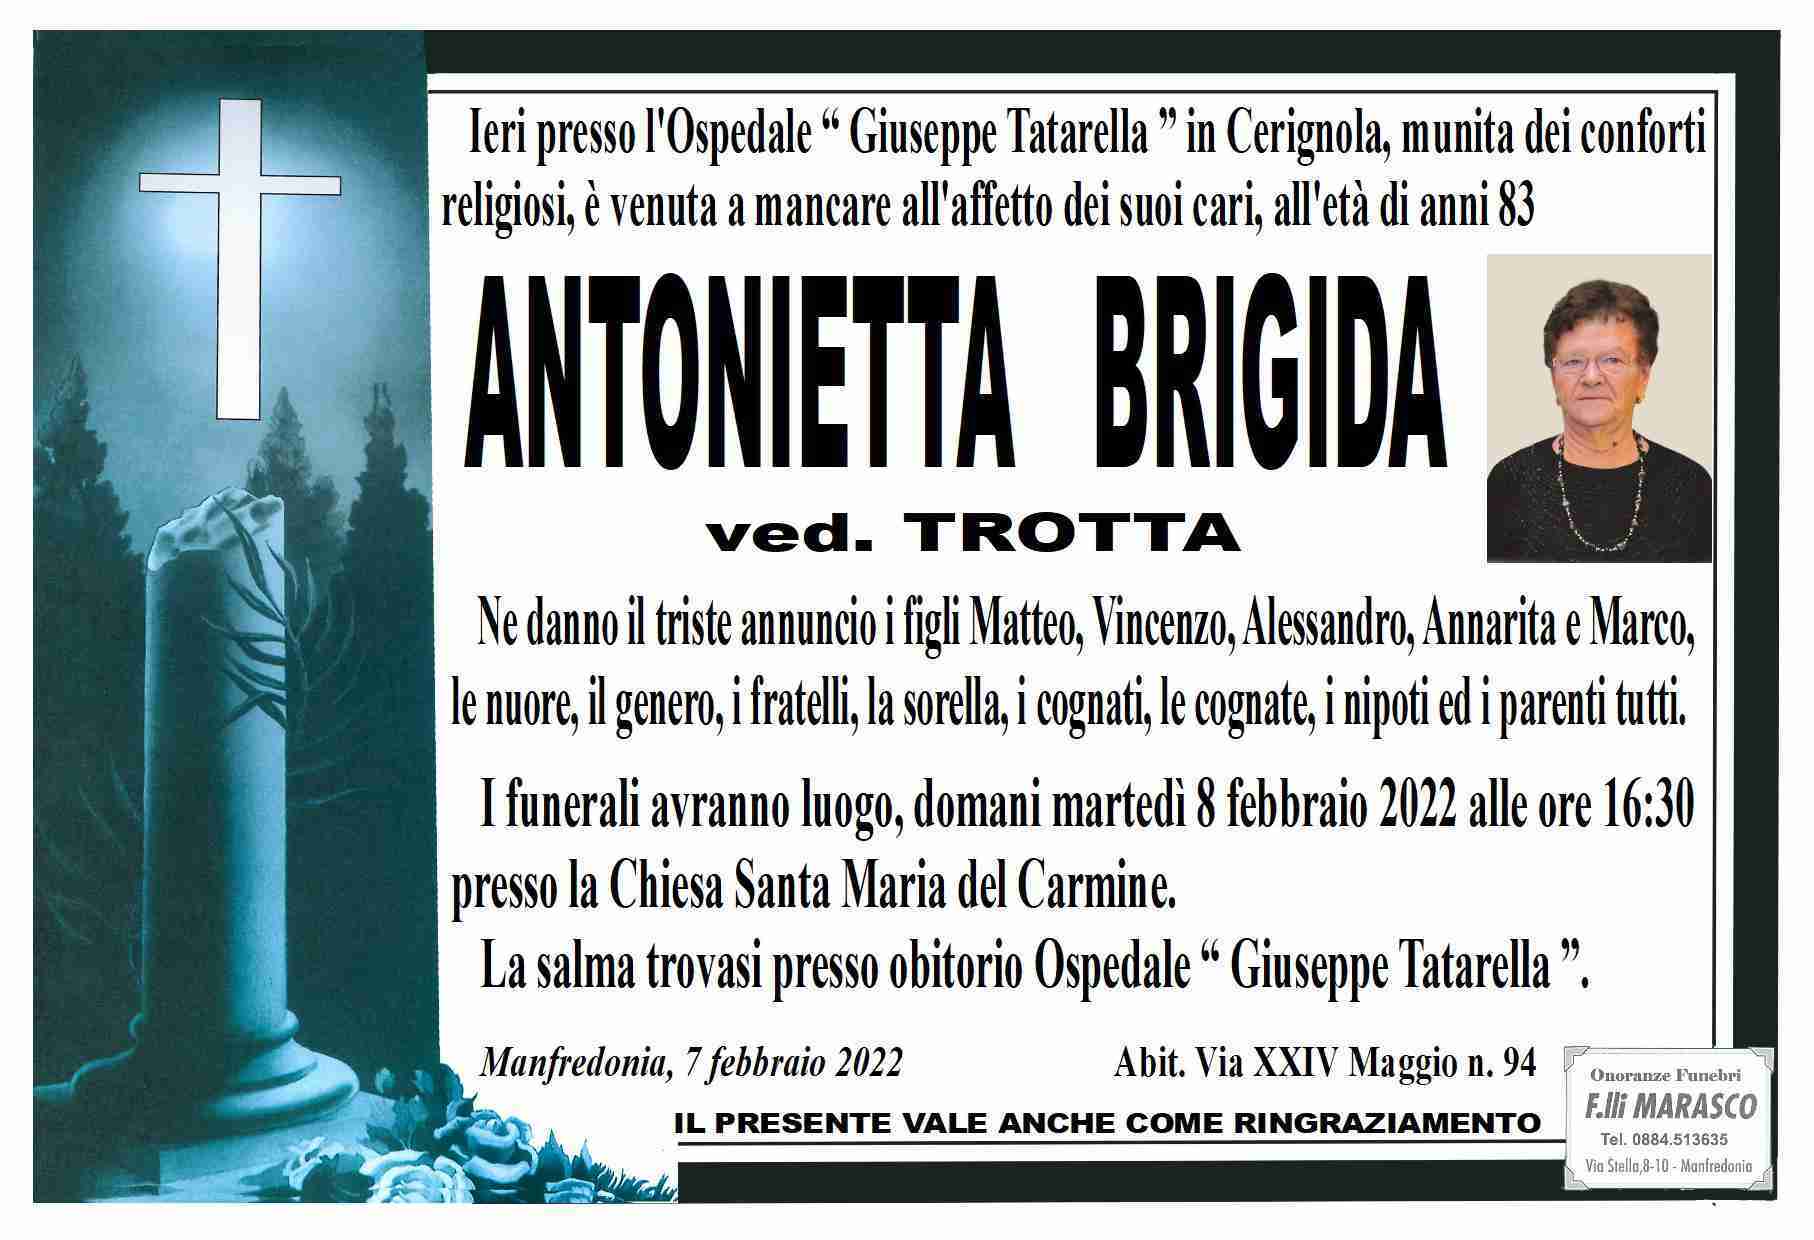 Antonietta Brigida